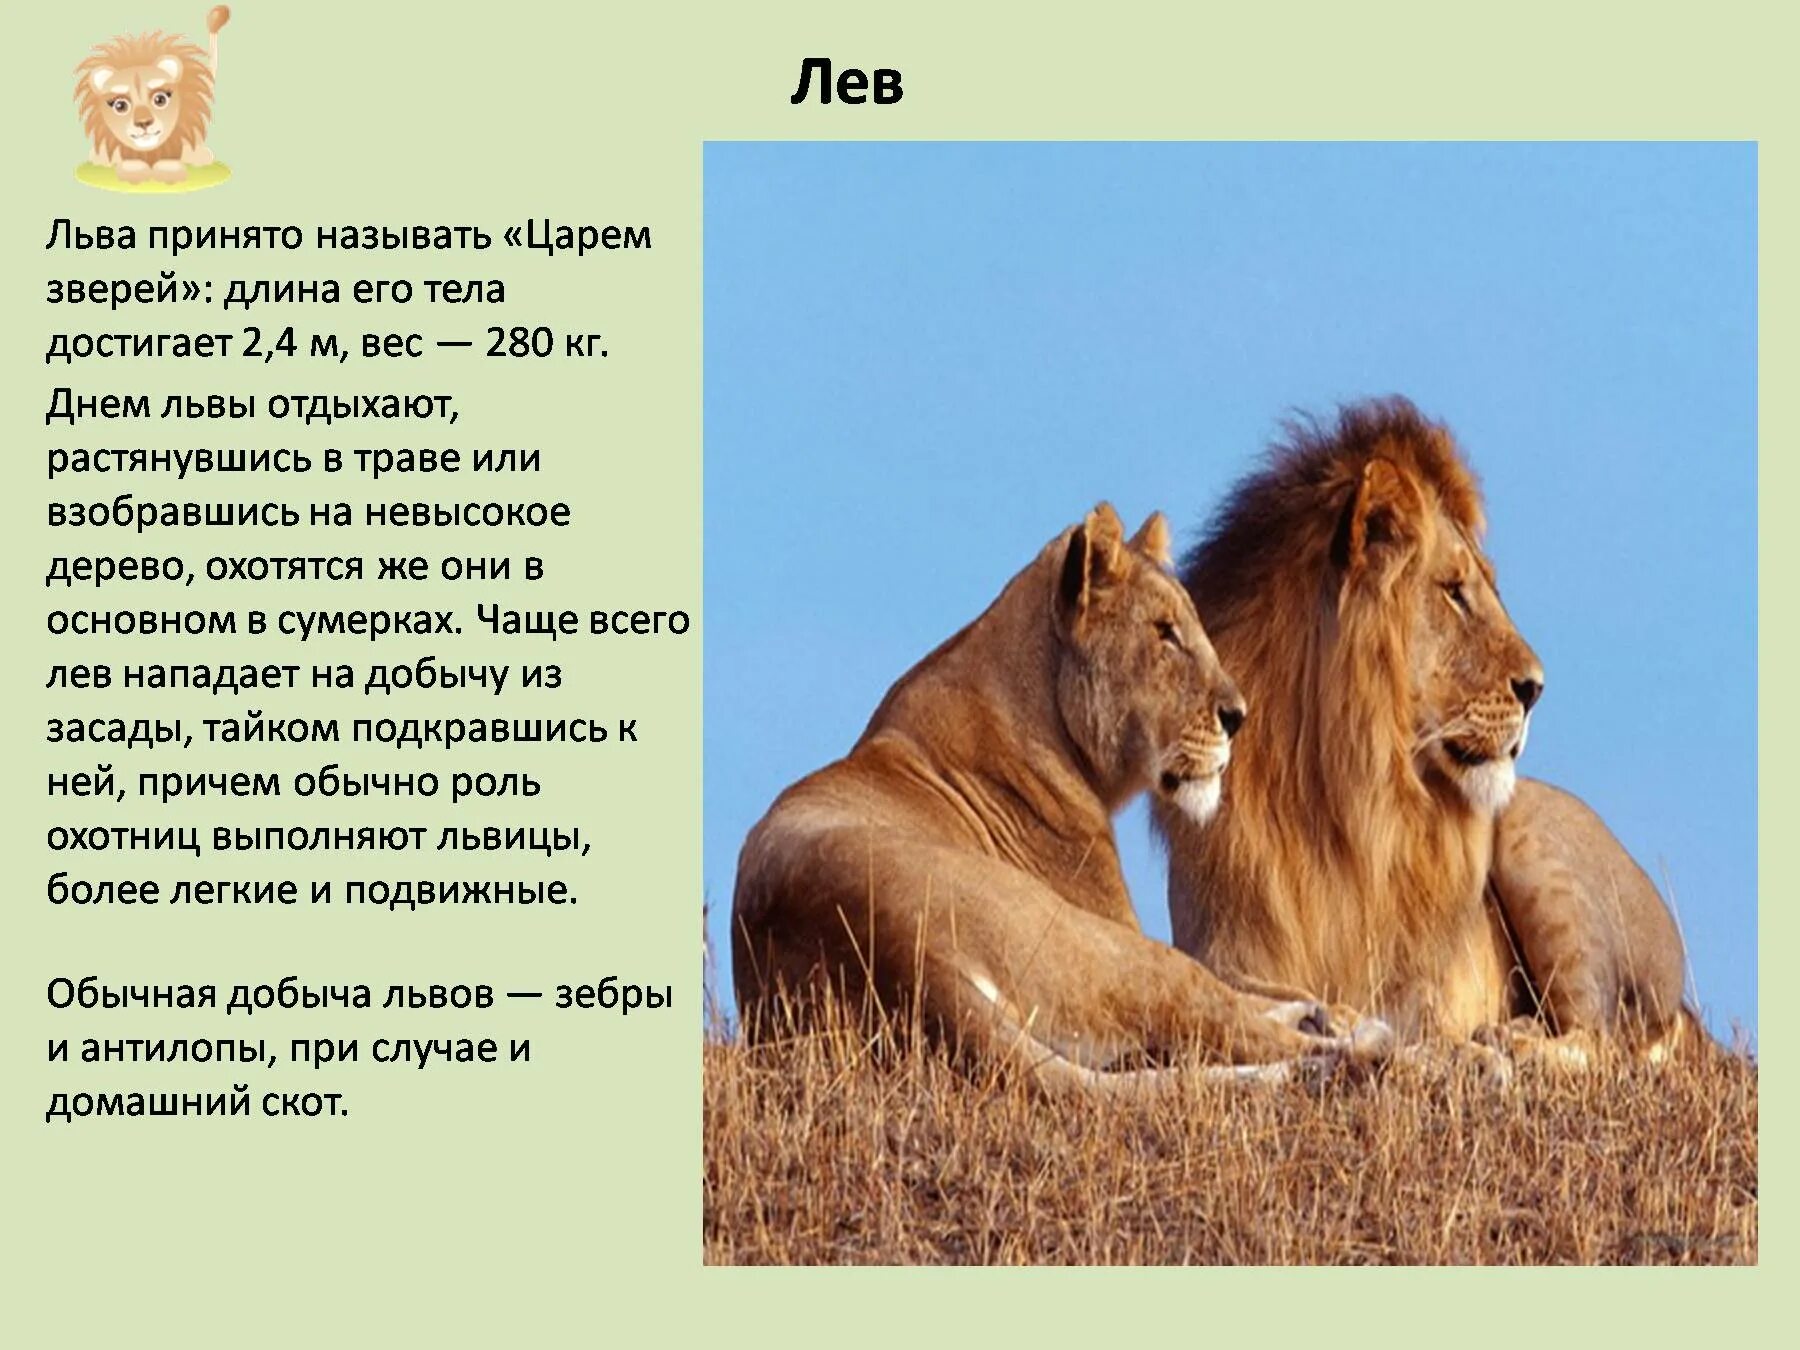 Доклад о животных. Описание Льва. Рассказ про Льва. Лев для презентации. Истории принято называть